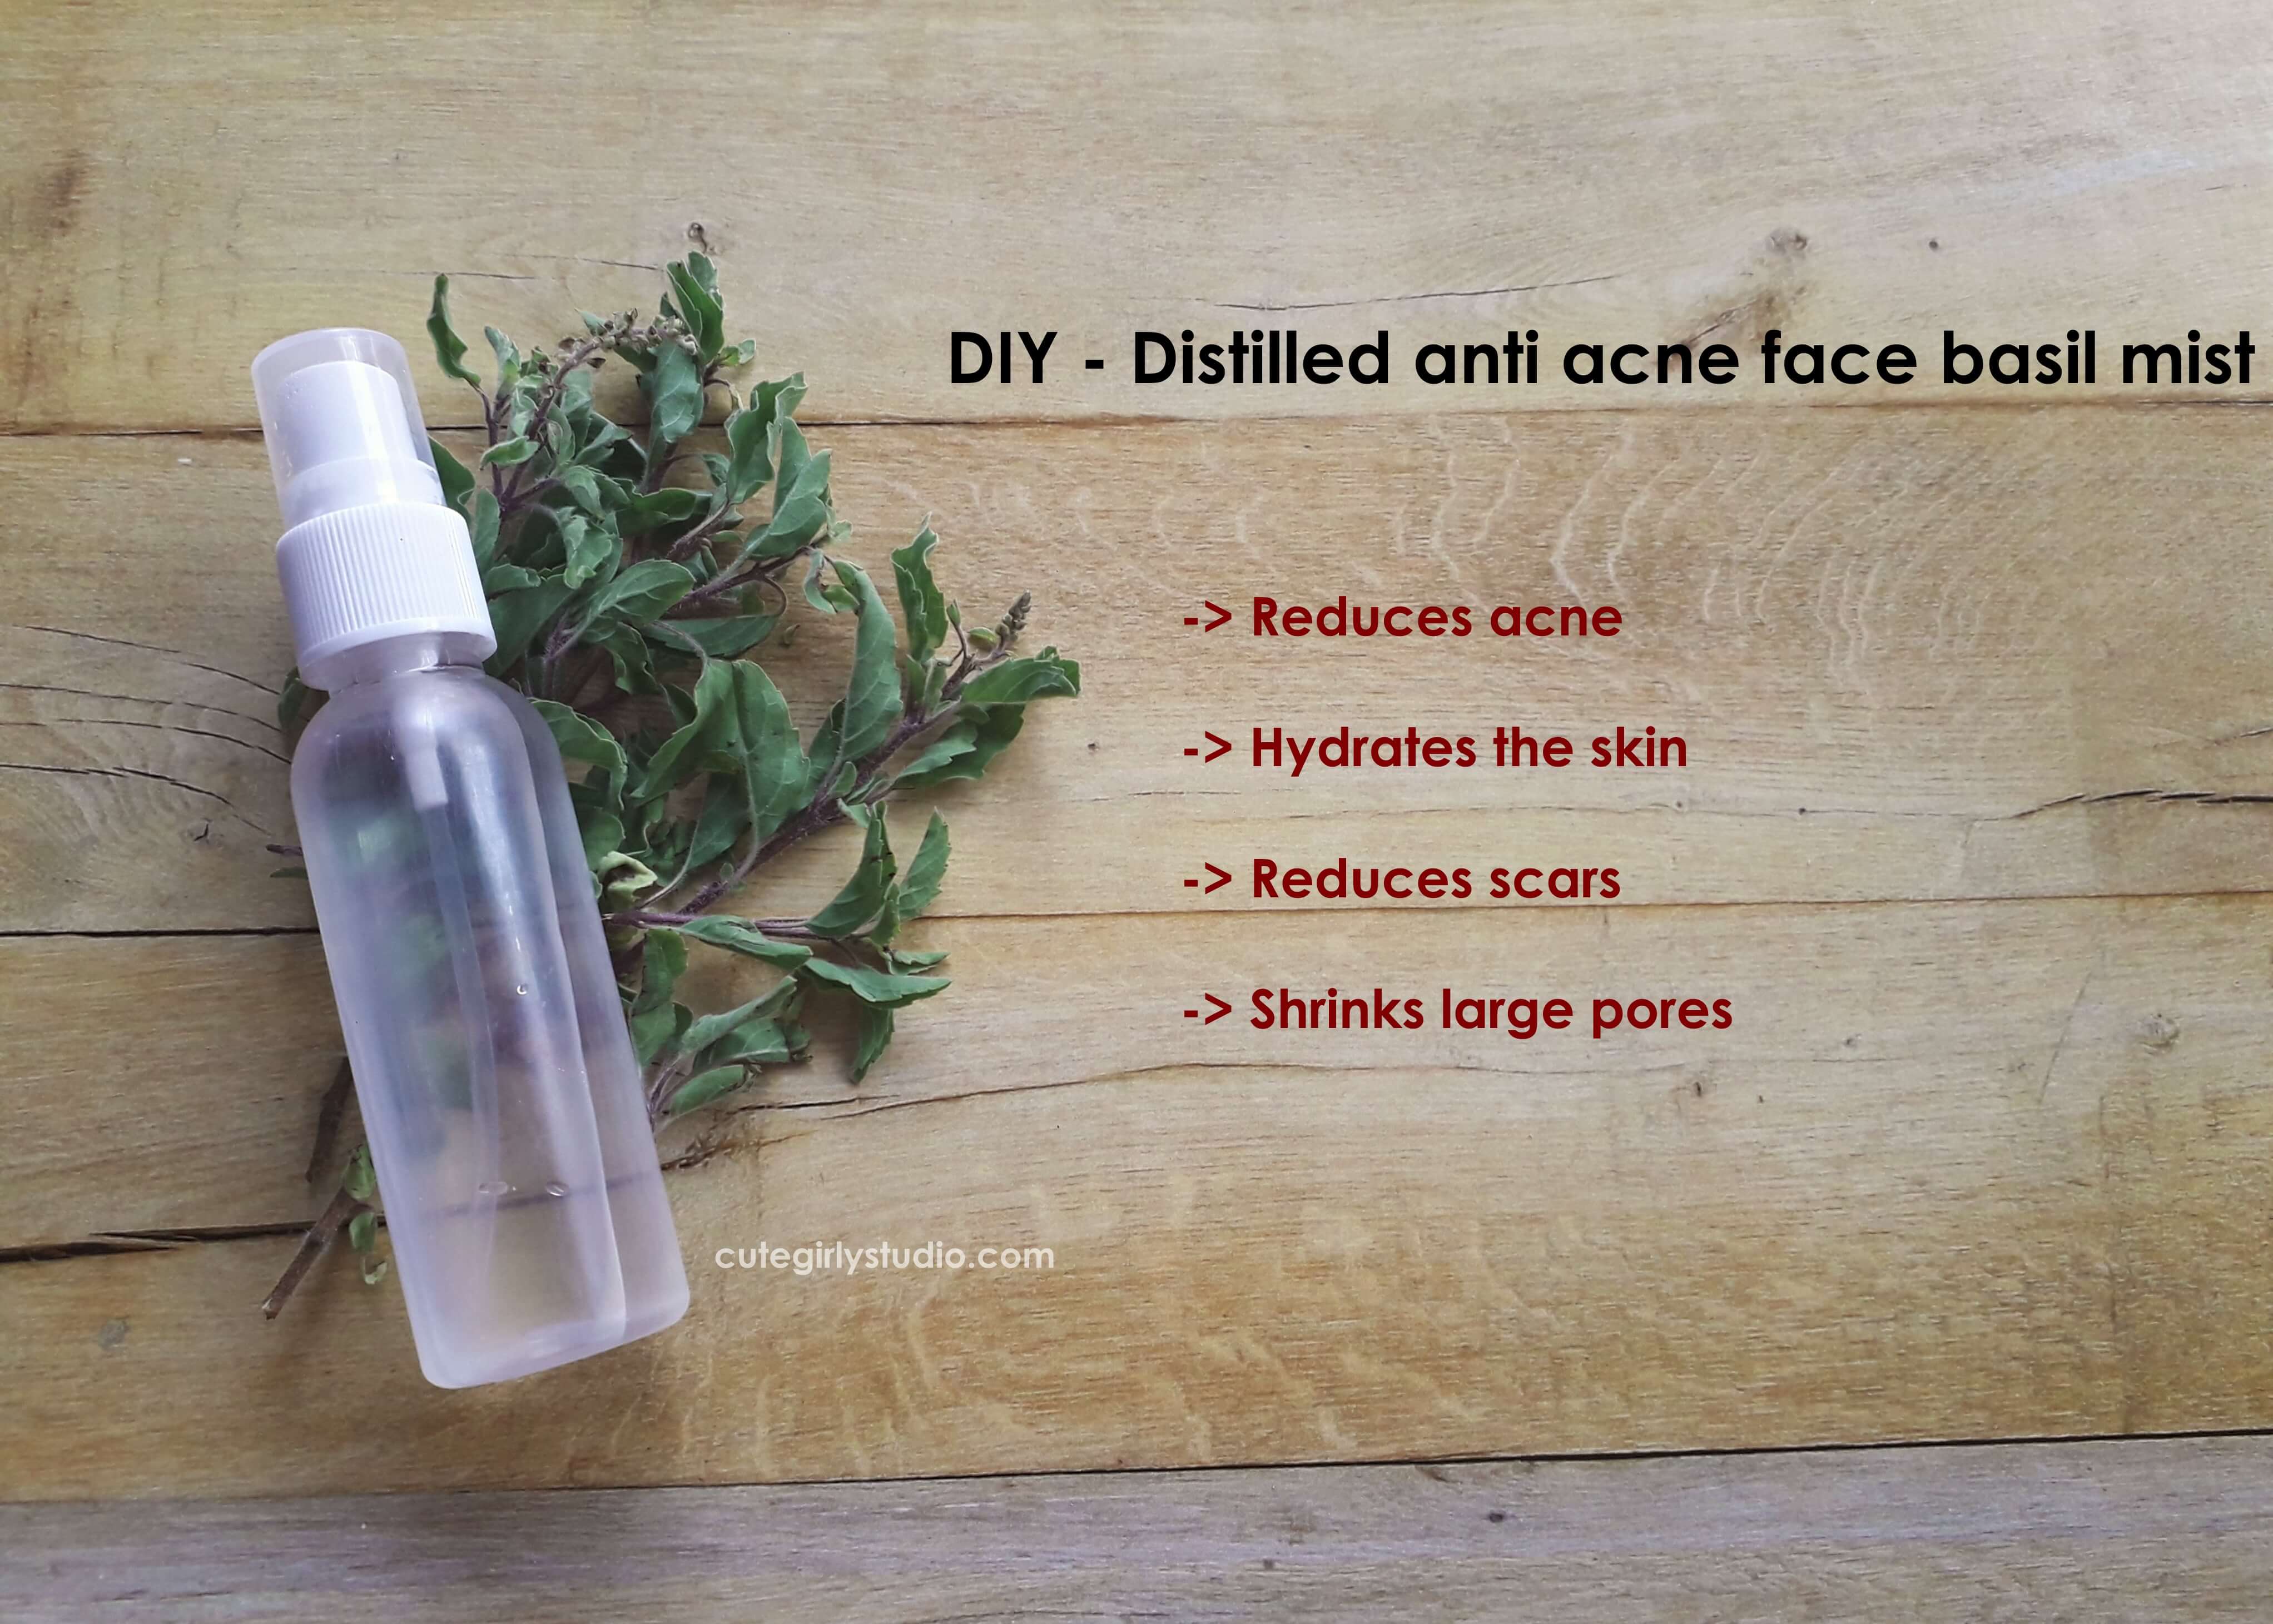 DIY - Distilled anti acne basil face mist